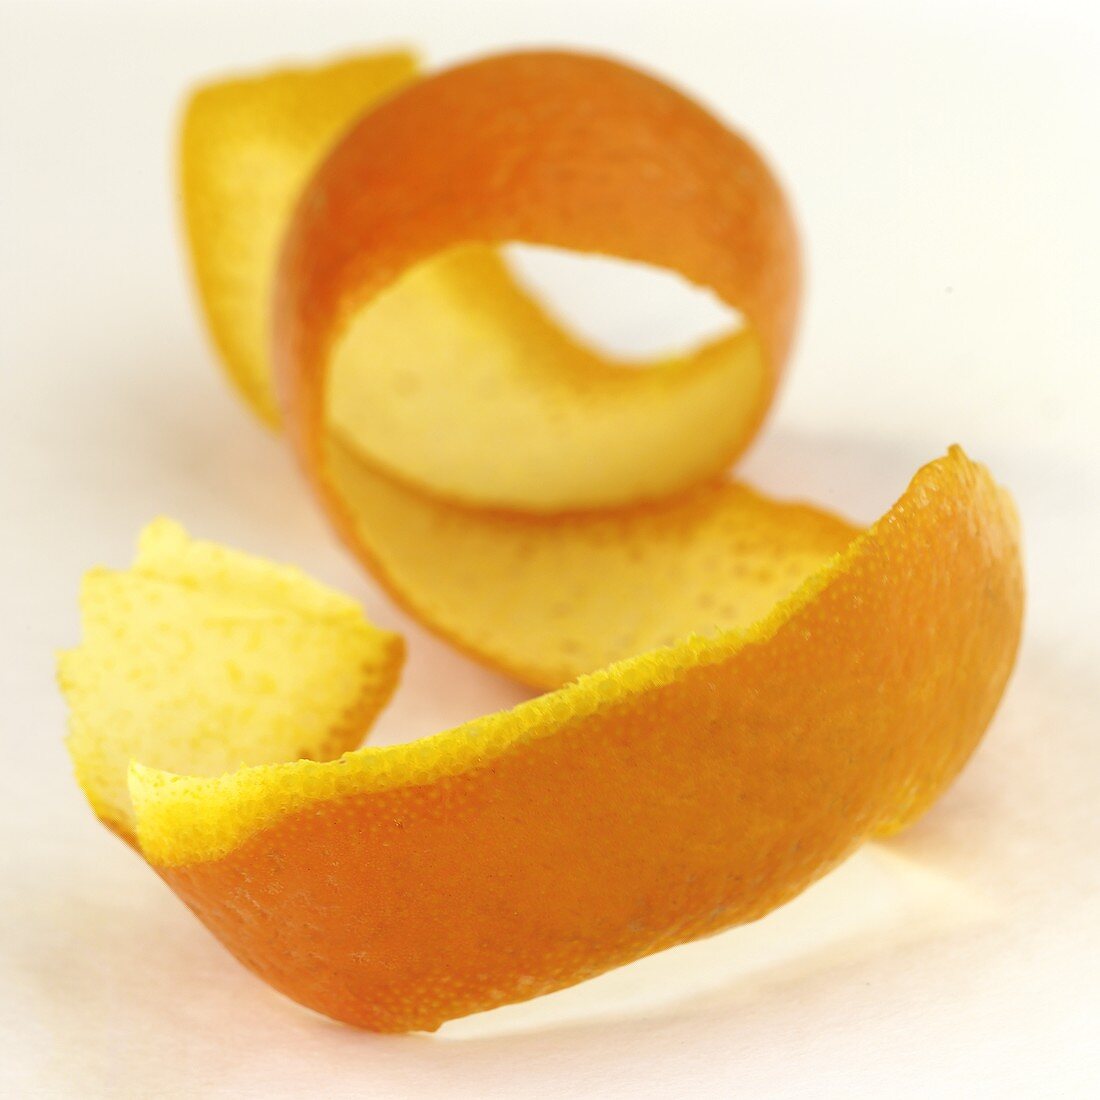 Spiral-shaped orange peel